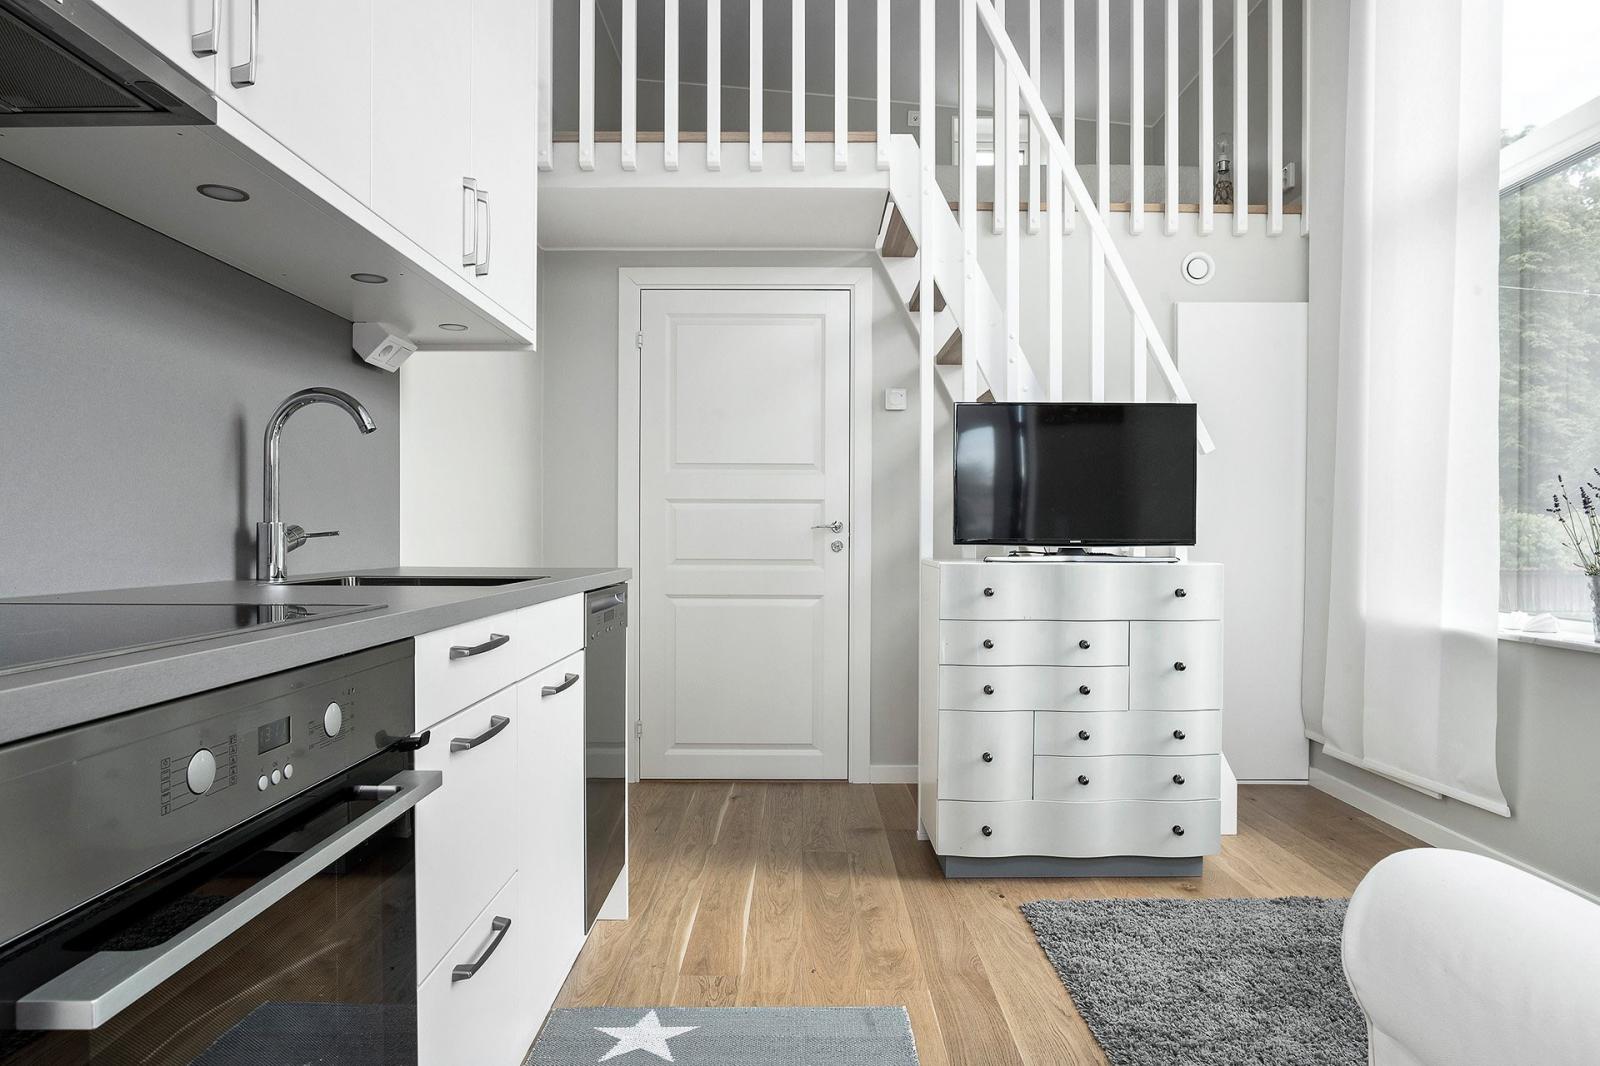 Hình ảnh không gian bên trong nhà nhỏ 19m2 với tủ kệ tivi, sofa màu trắng, bếp nấu, cầu thang lên gác xép